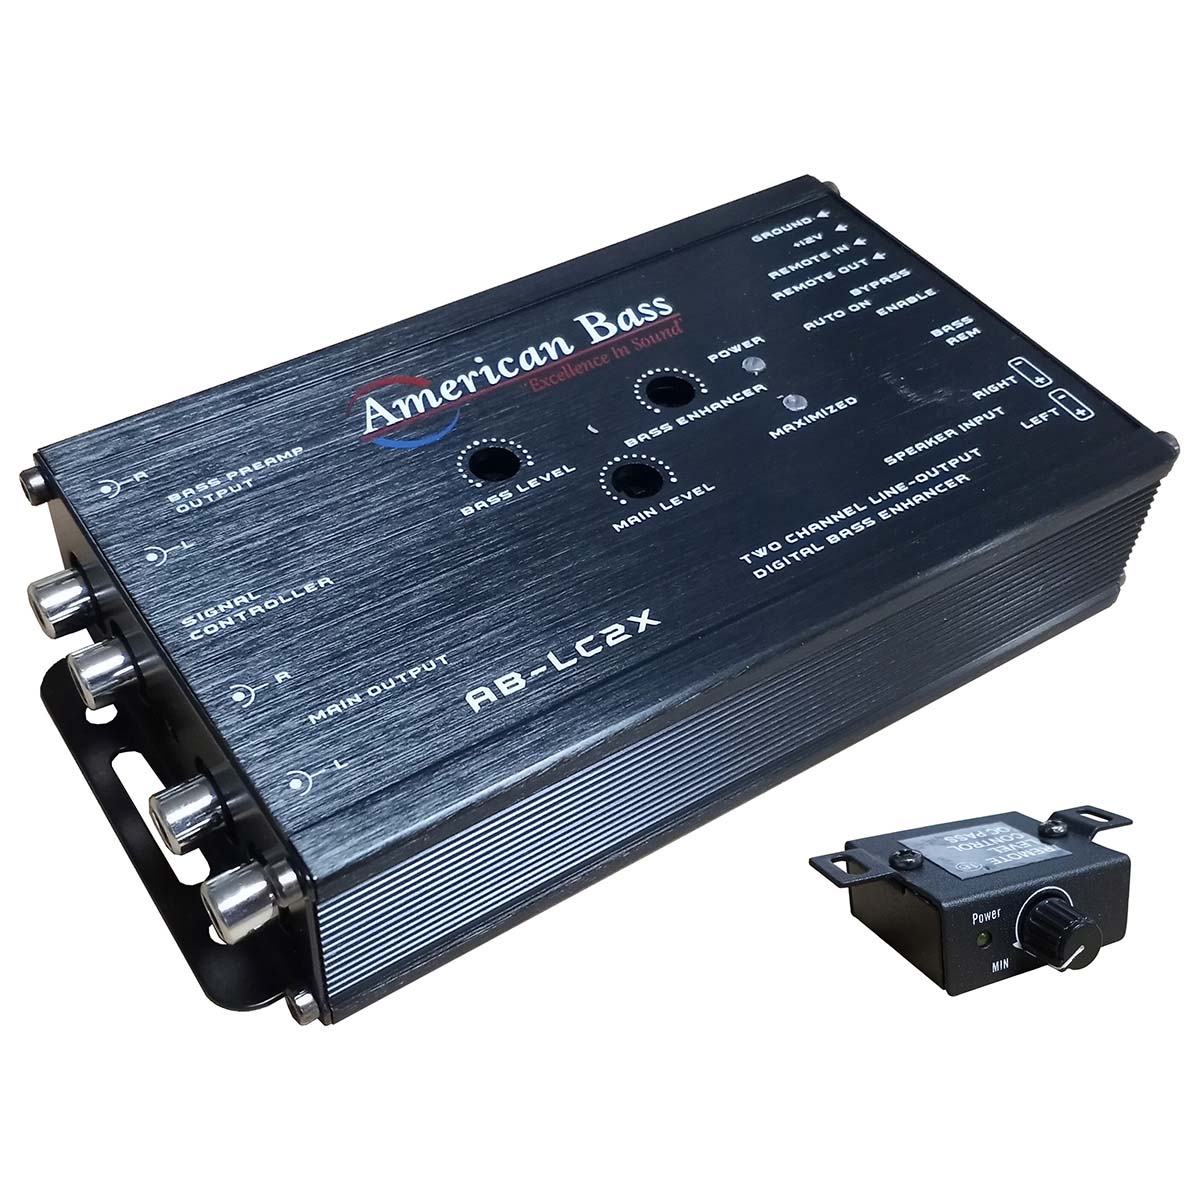 American Bass 2-Channel Line Output Converter - Digital Bass Enhancer